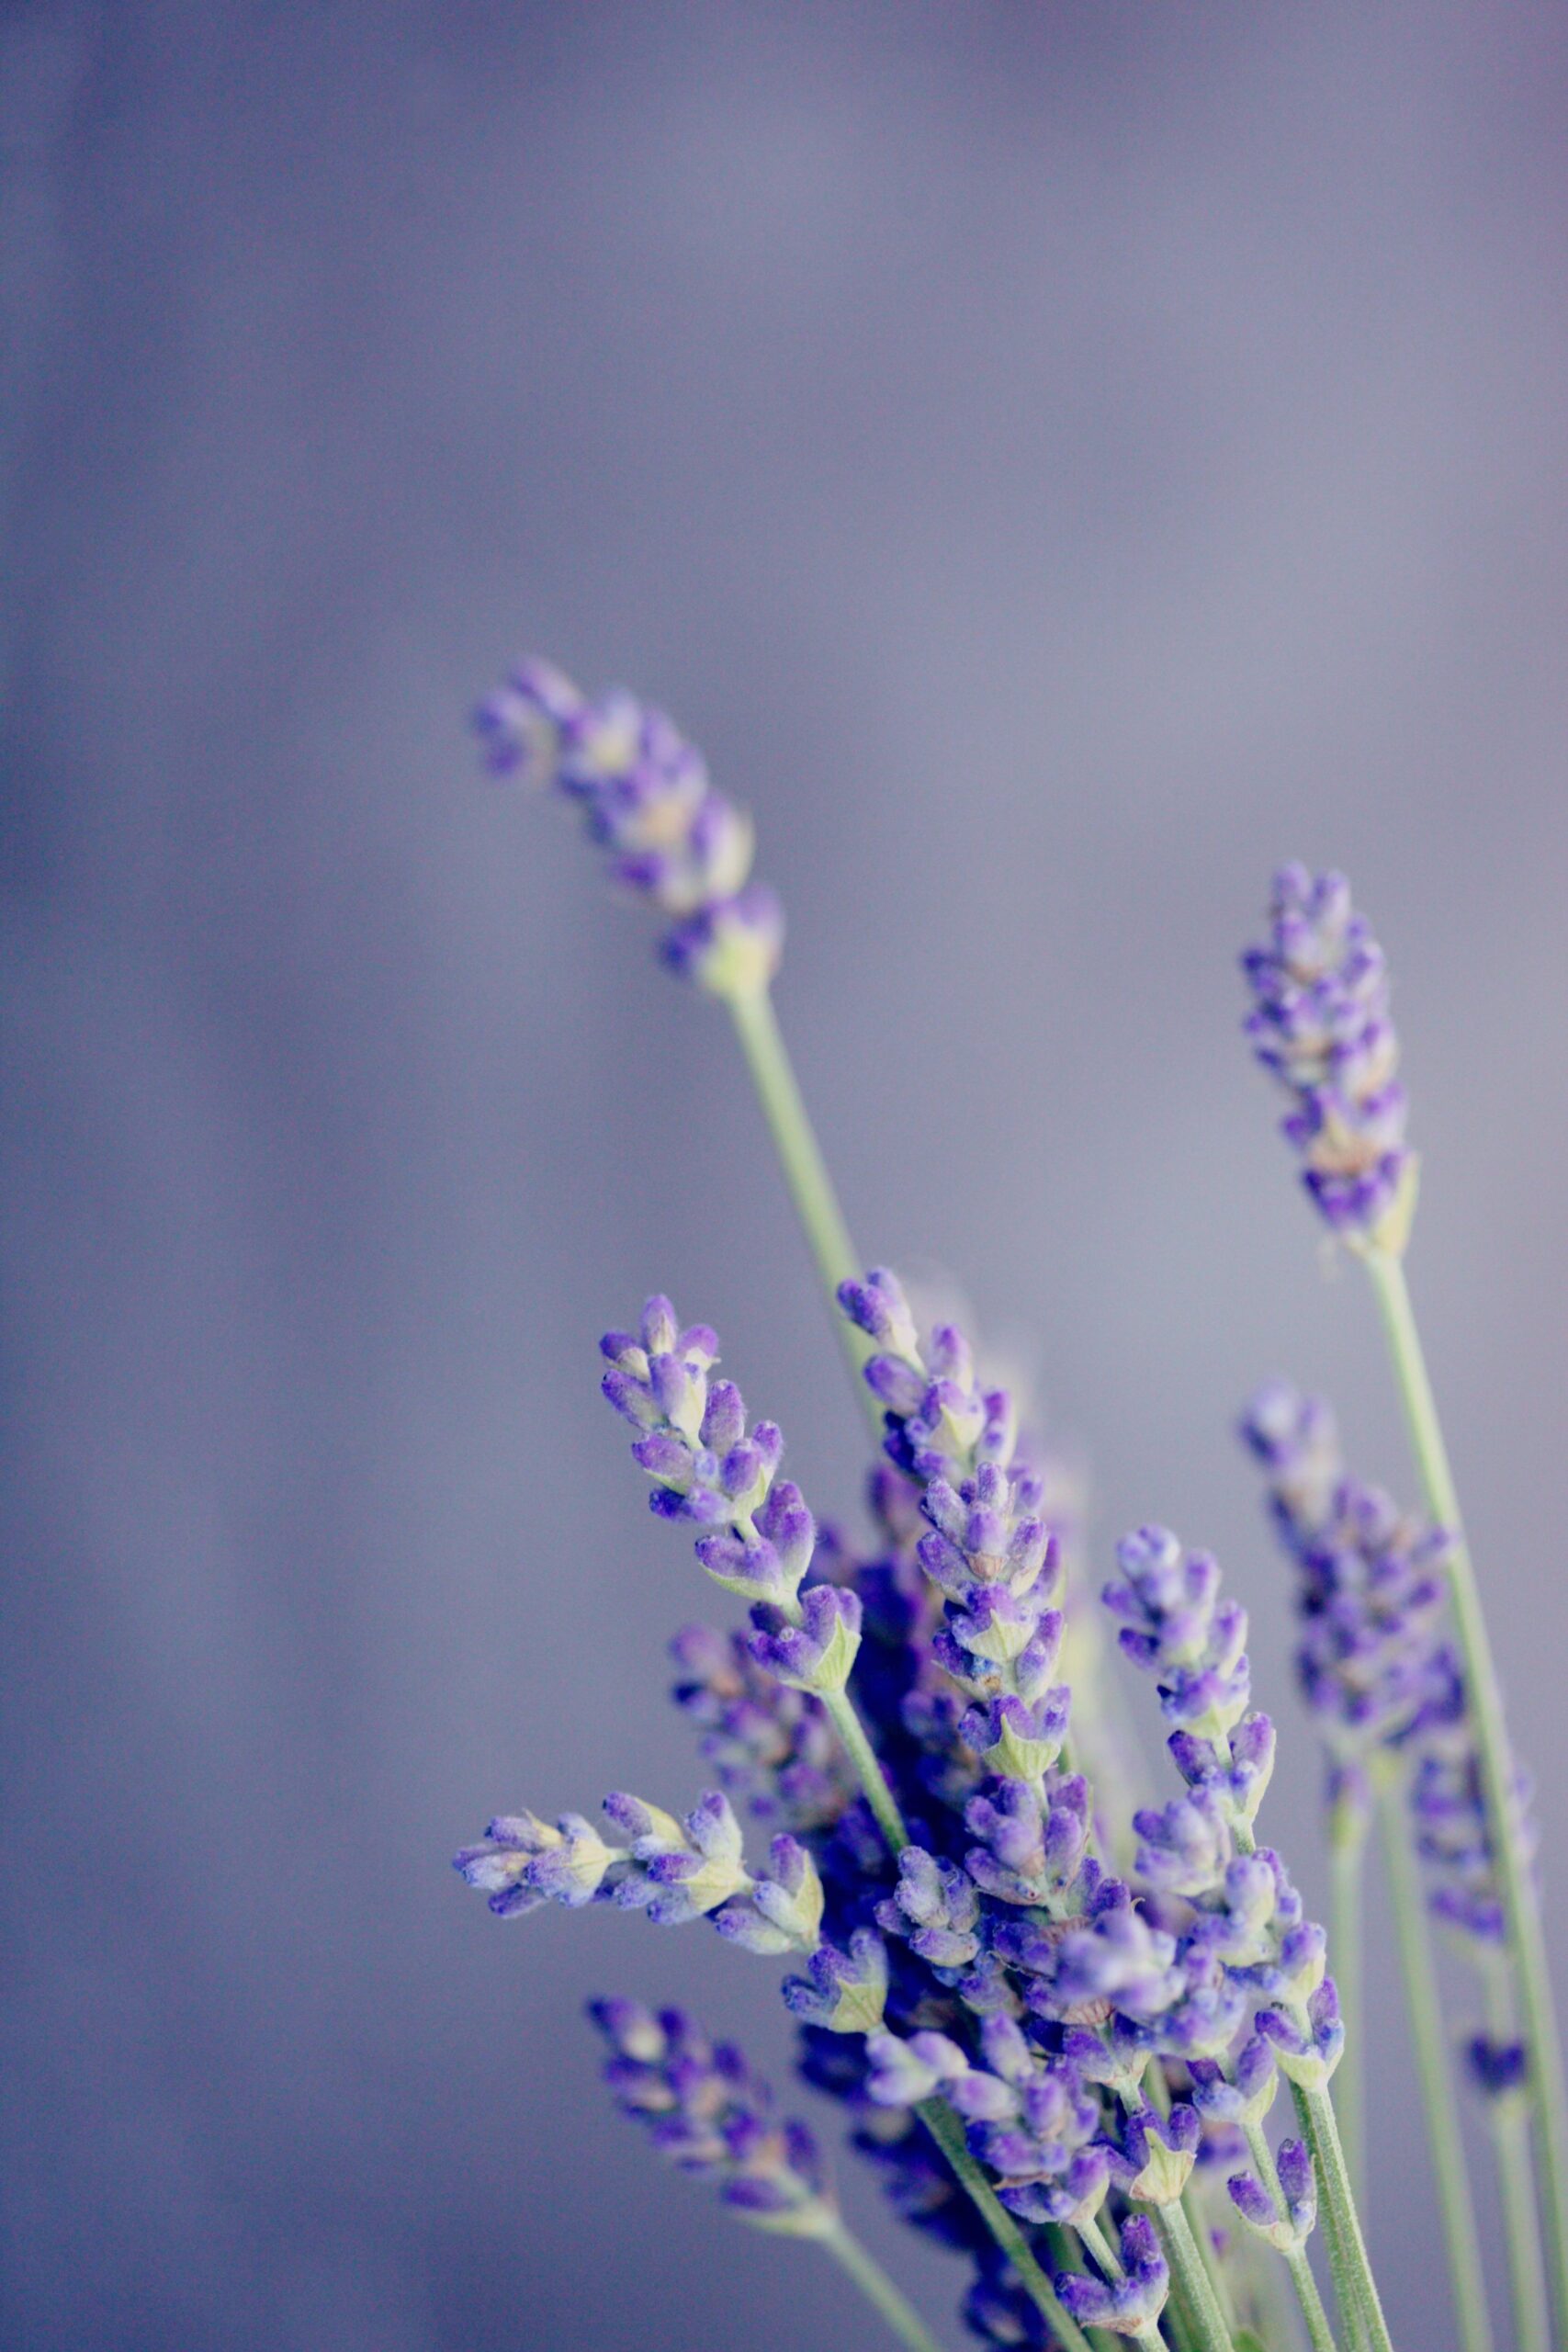 Hình nền hoa lavender là sự kết hợp tuyệt vời giữa màu sắc và hương thơm dịu nhẹ của loài hoa này. Nếu bạn muốn tìm kiếm một bức ảnh hoa đẹp để làm hình nền cho máy tính hoặc điện thoại, thì đừng bỏ lỡ ngay bức ảnh hoa lavender tuyệt đẹp này. Mỗi lần lật màn hình, bạn sẽ tận hưởng được sự tĩnh lặng và bình yên mà hoa lavender mang lại.